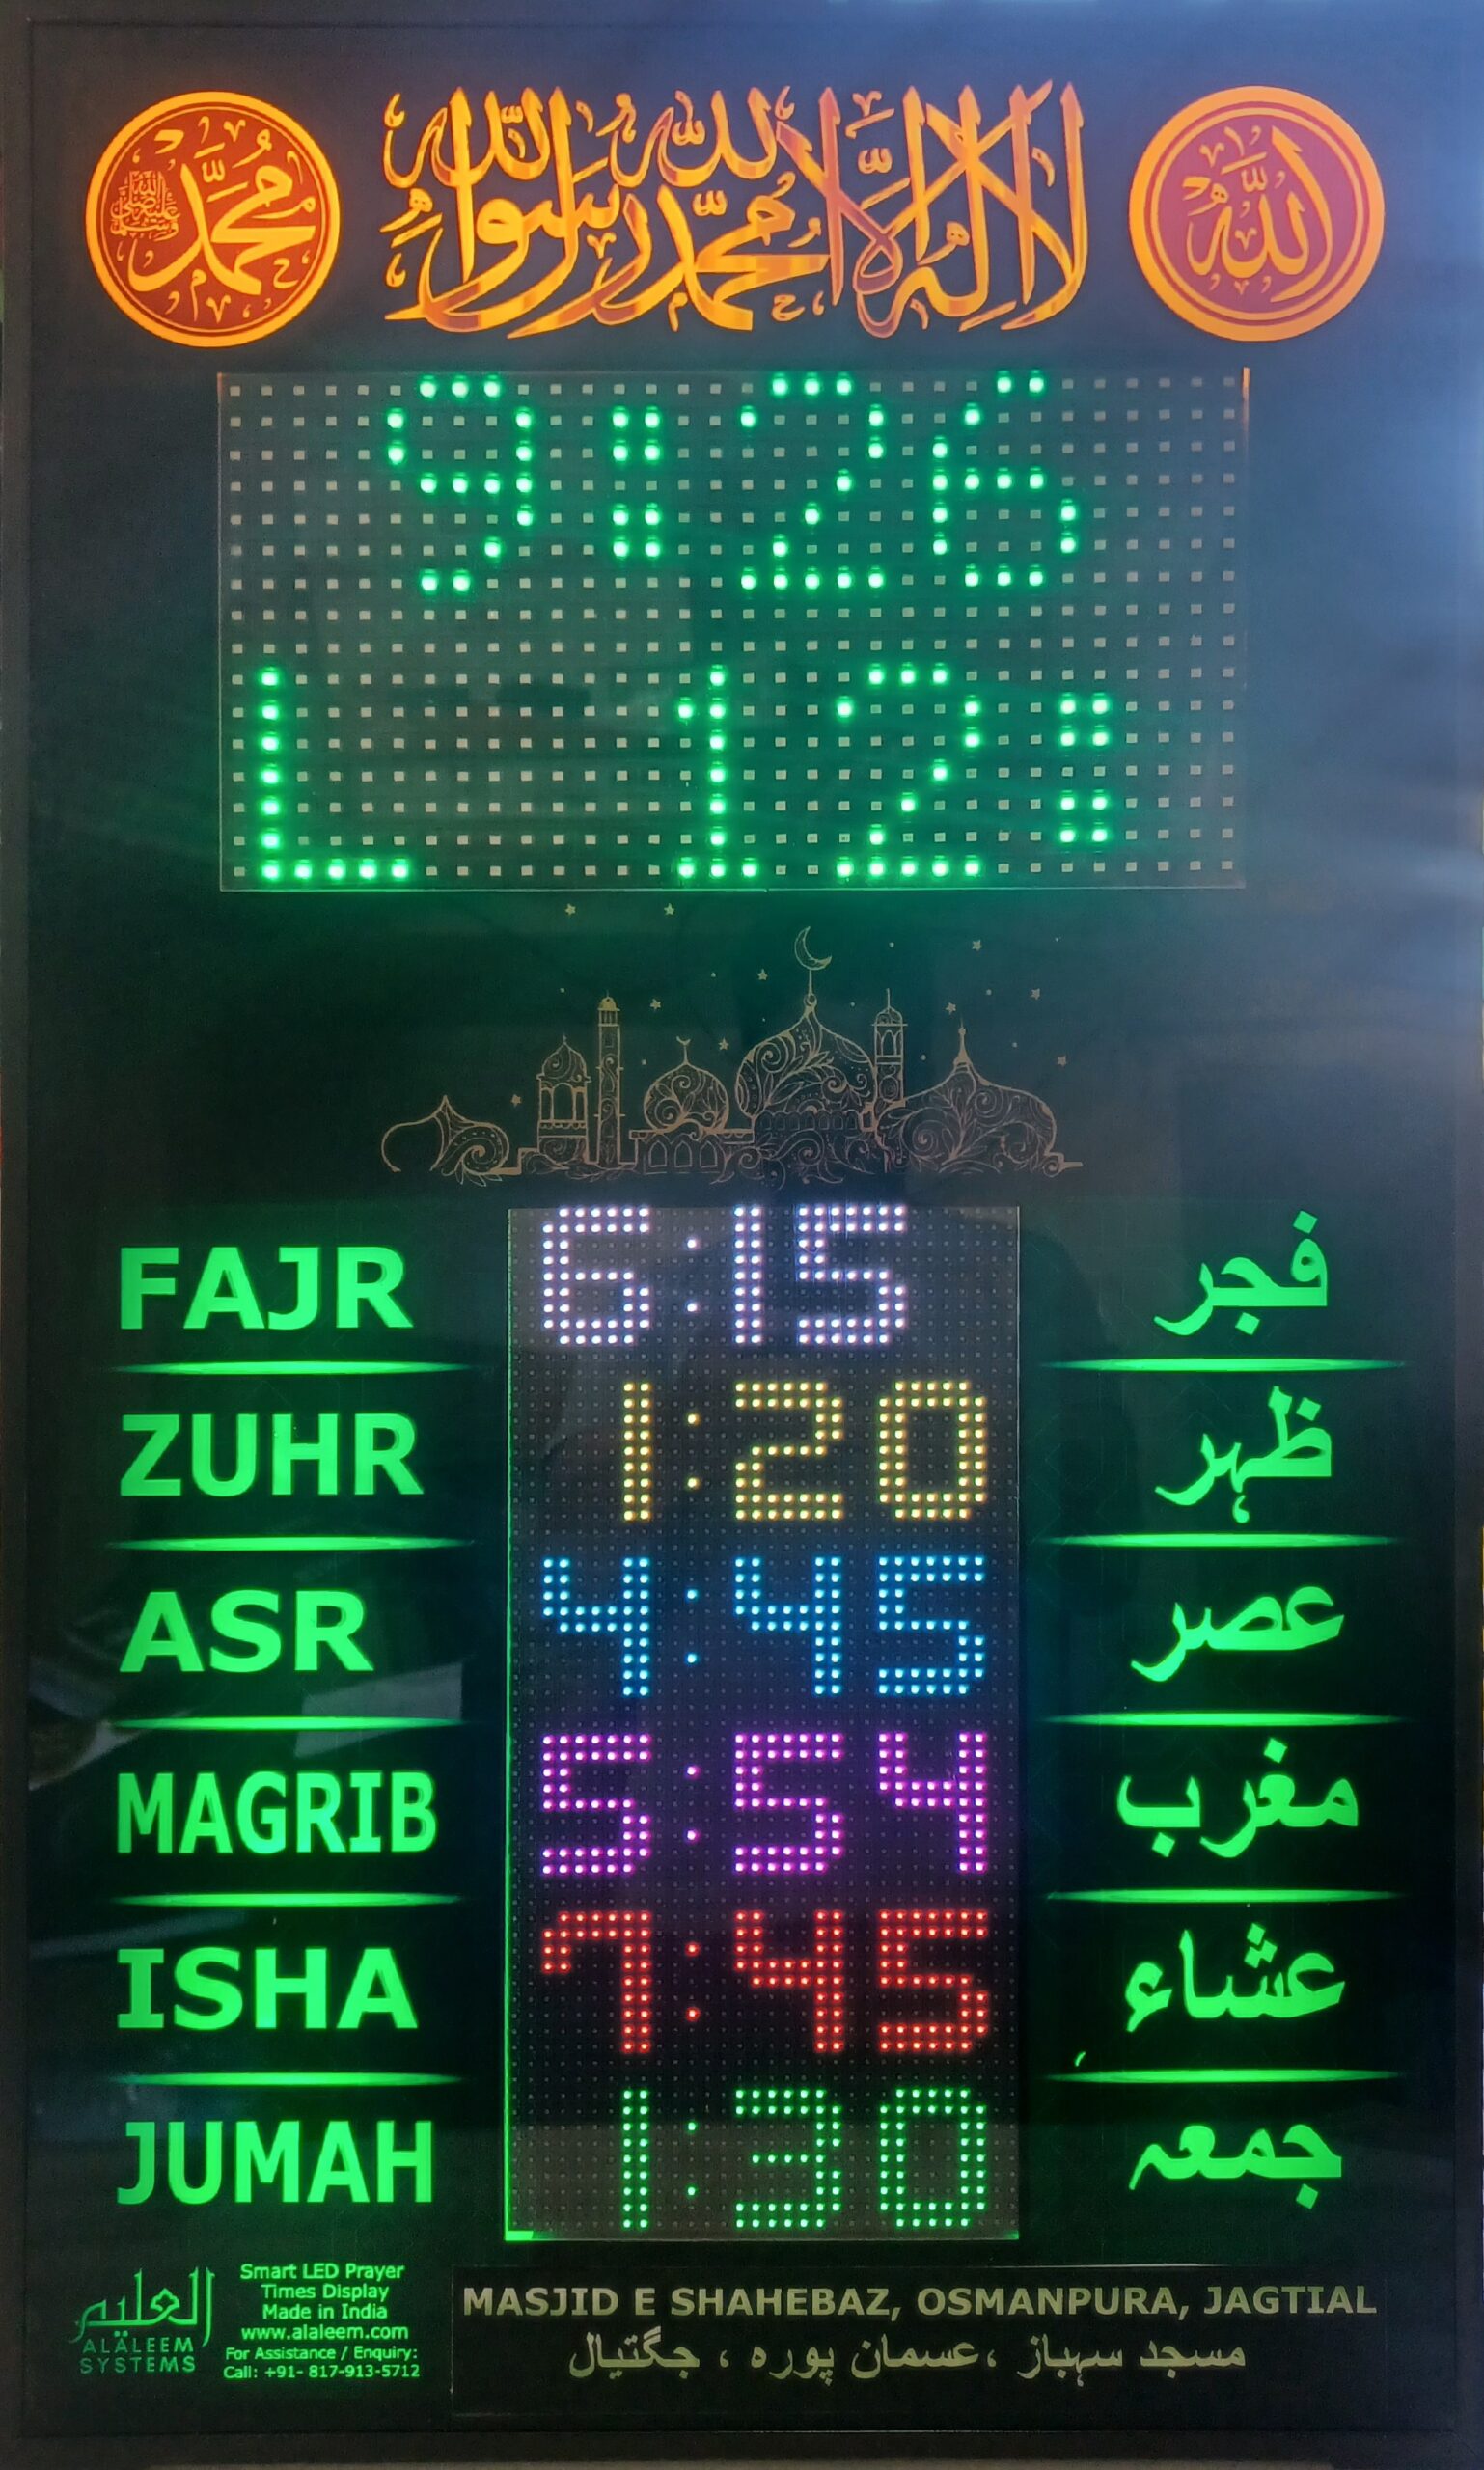 FB0P_Namaz_Prayer_Times_Indicator_LED_Displa-scaled.jpg